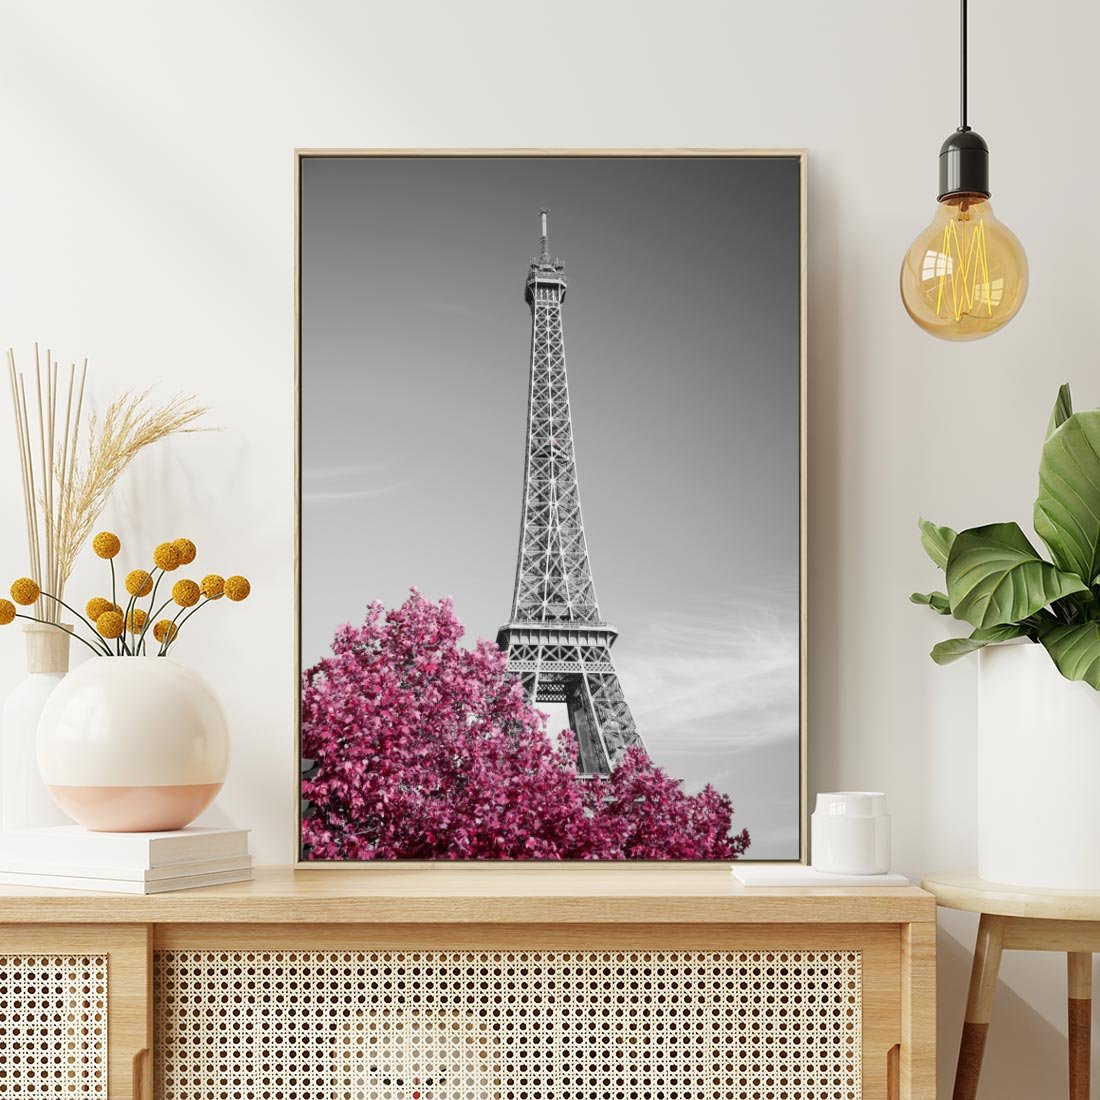 Obraz w ramie 50x70 - Różowy Paryż - czarno białe zdjęcie, wieża eiffla - rama drewno